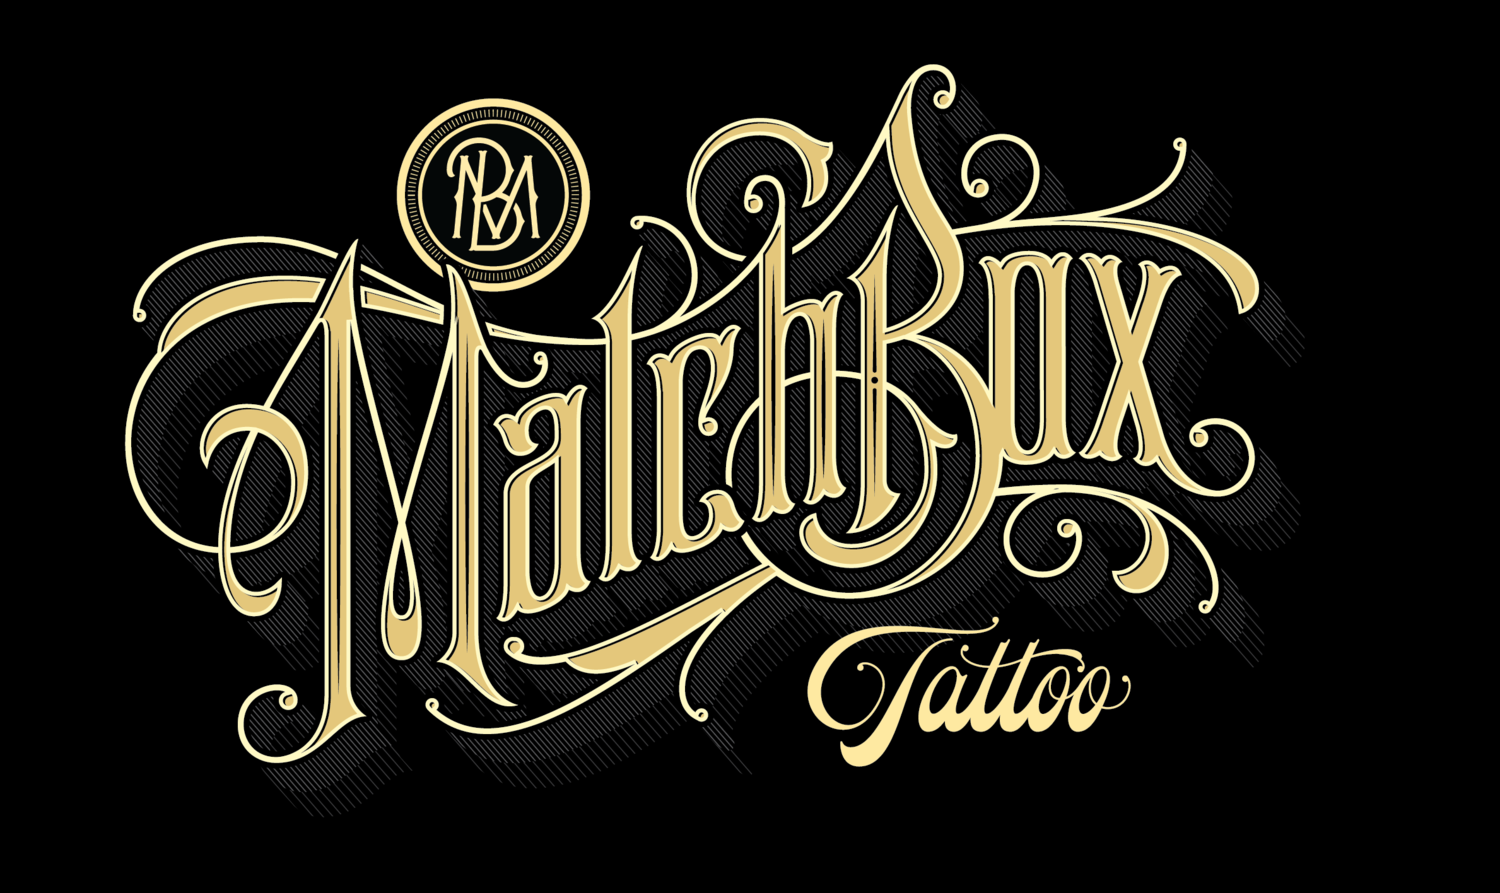 Matchbox Tattoo Company Inc.